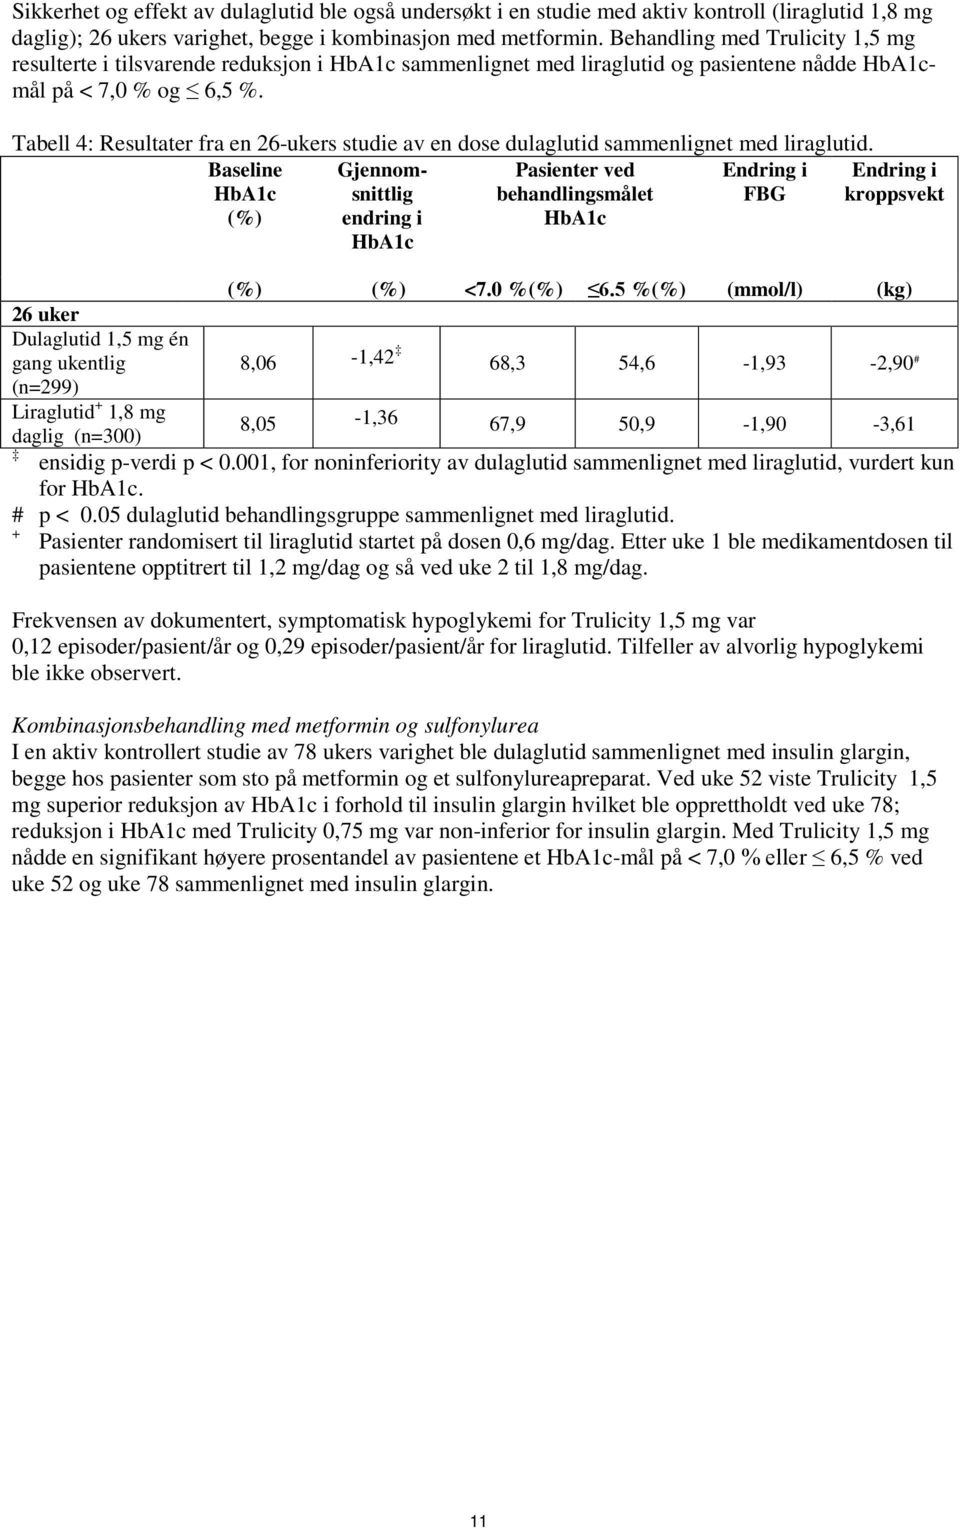 Tabell 4: Resultater fra en 26-ukers studie av en dose dulaglutid sammenlignet med liraglutid.